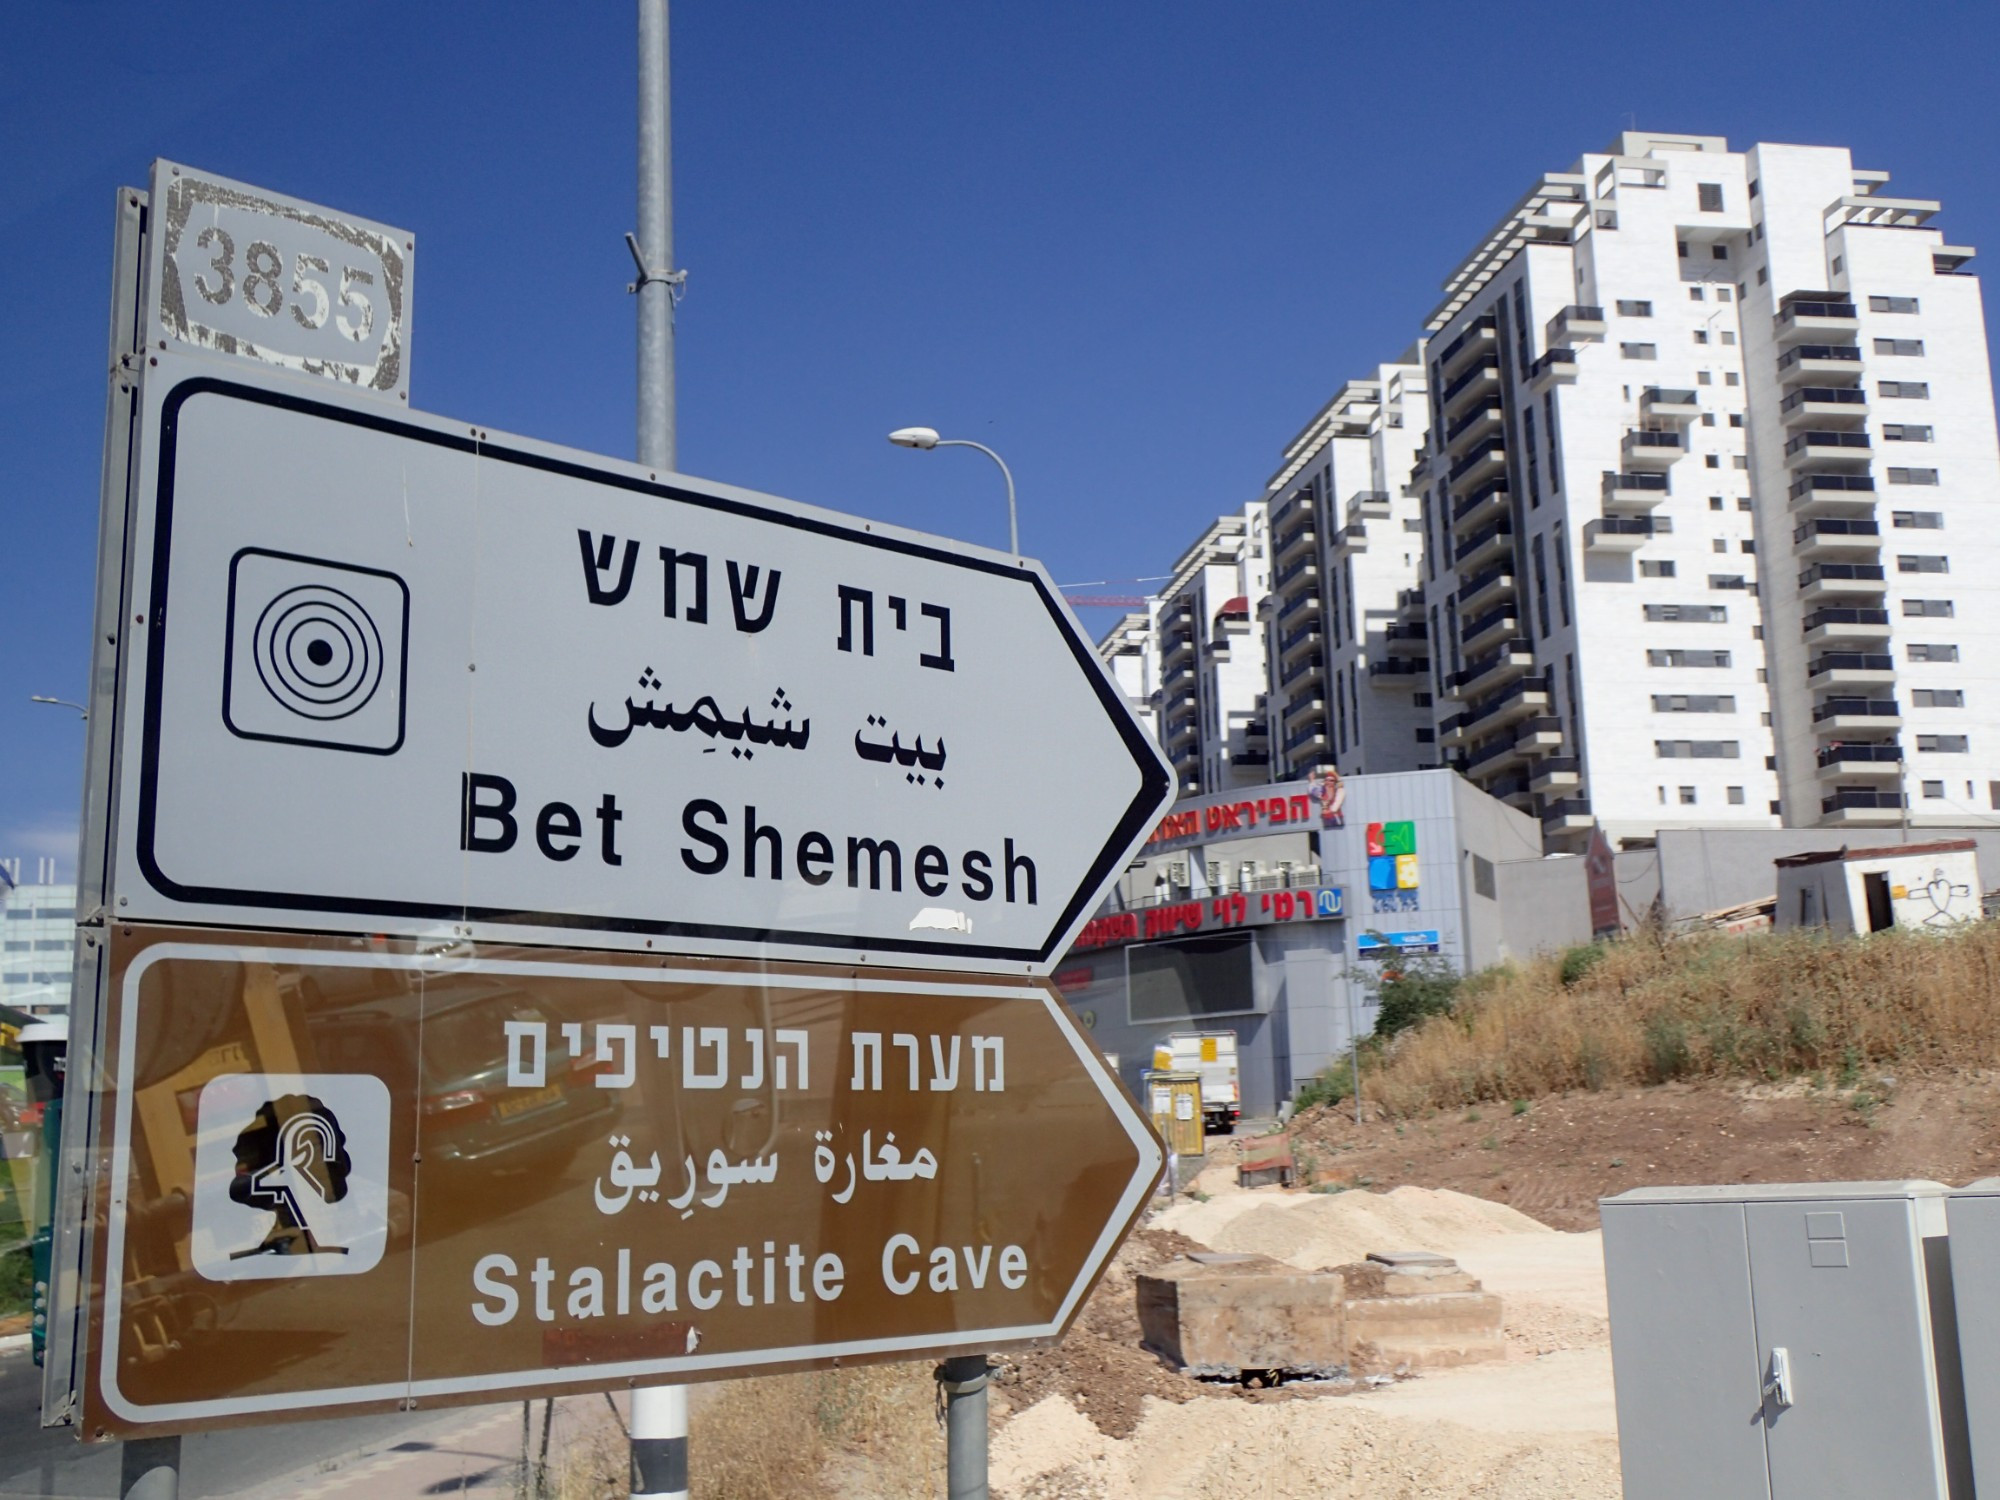 Beth Shemesh, Israel